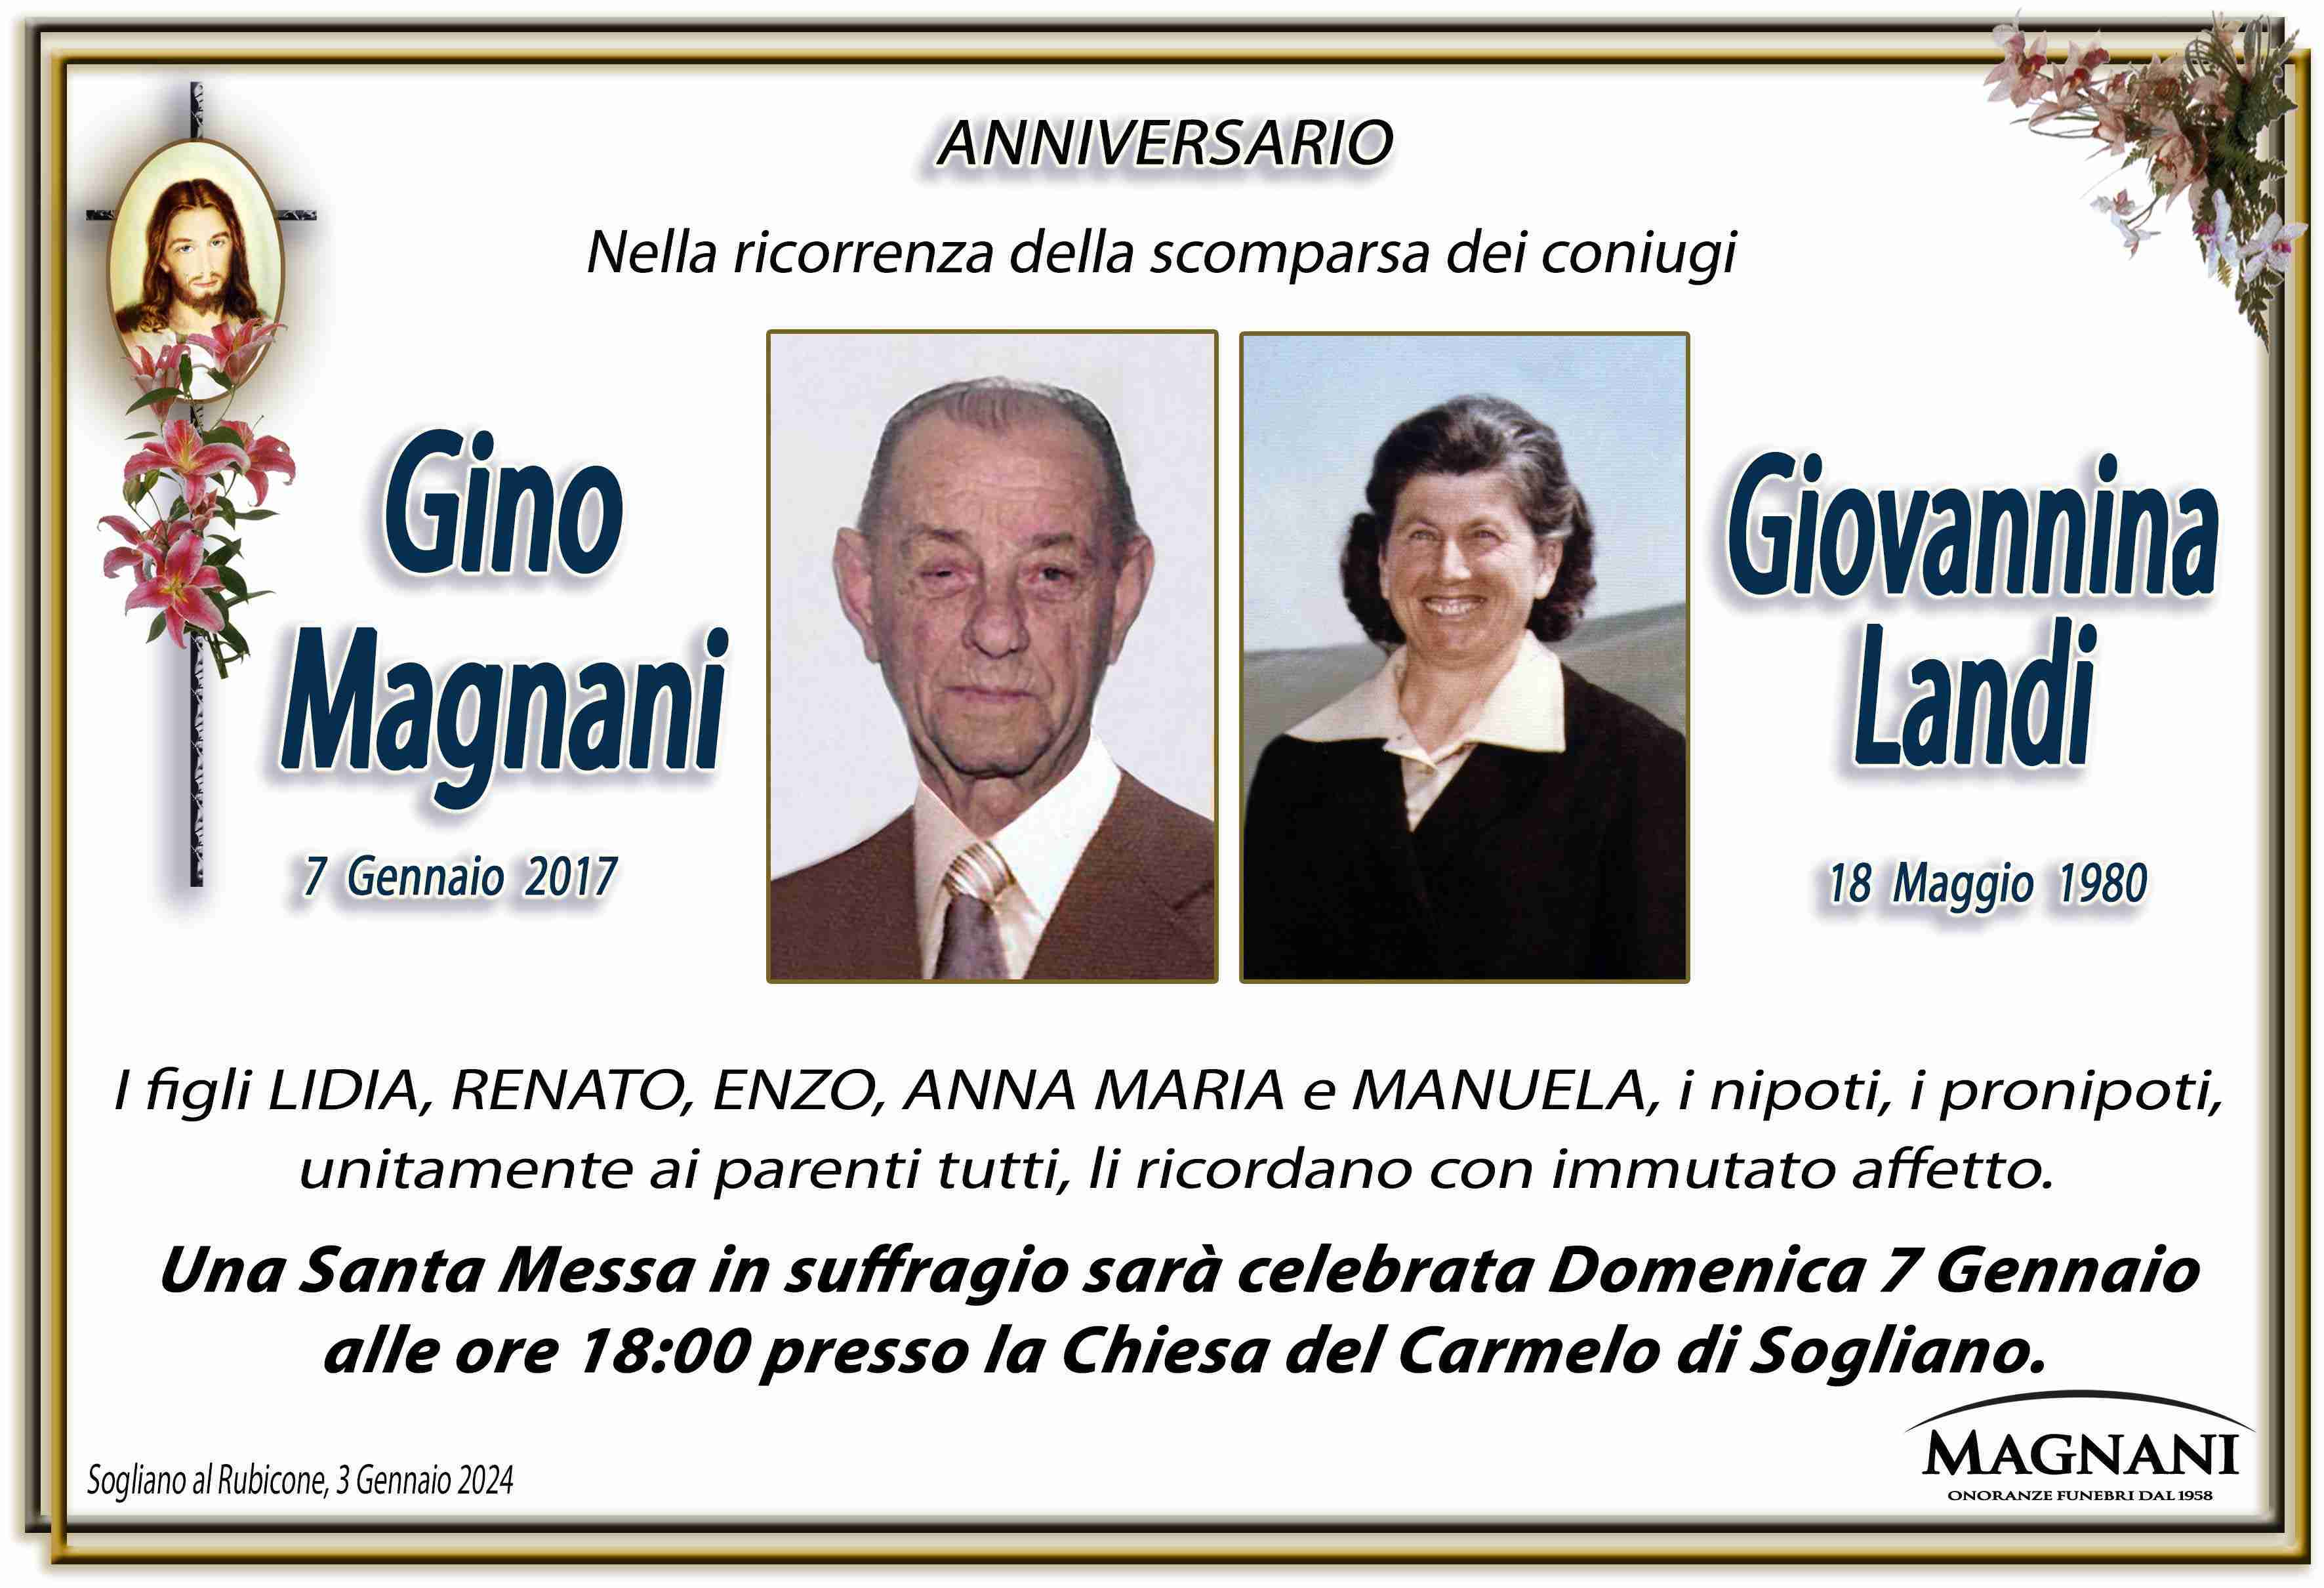 Gino Magnani e Giovannina Landi